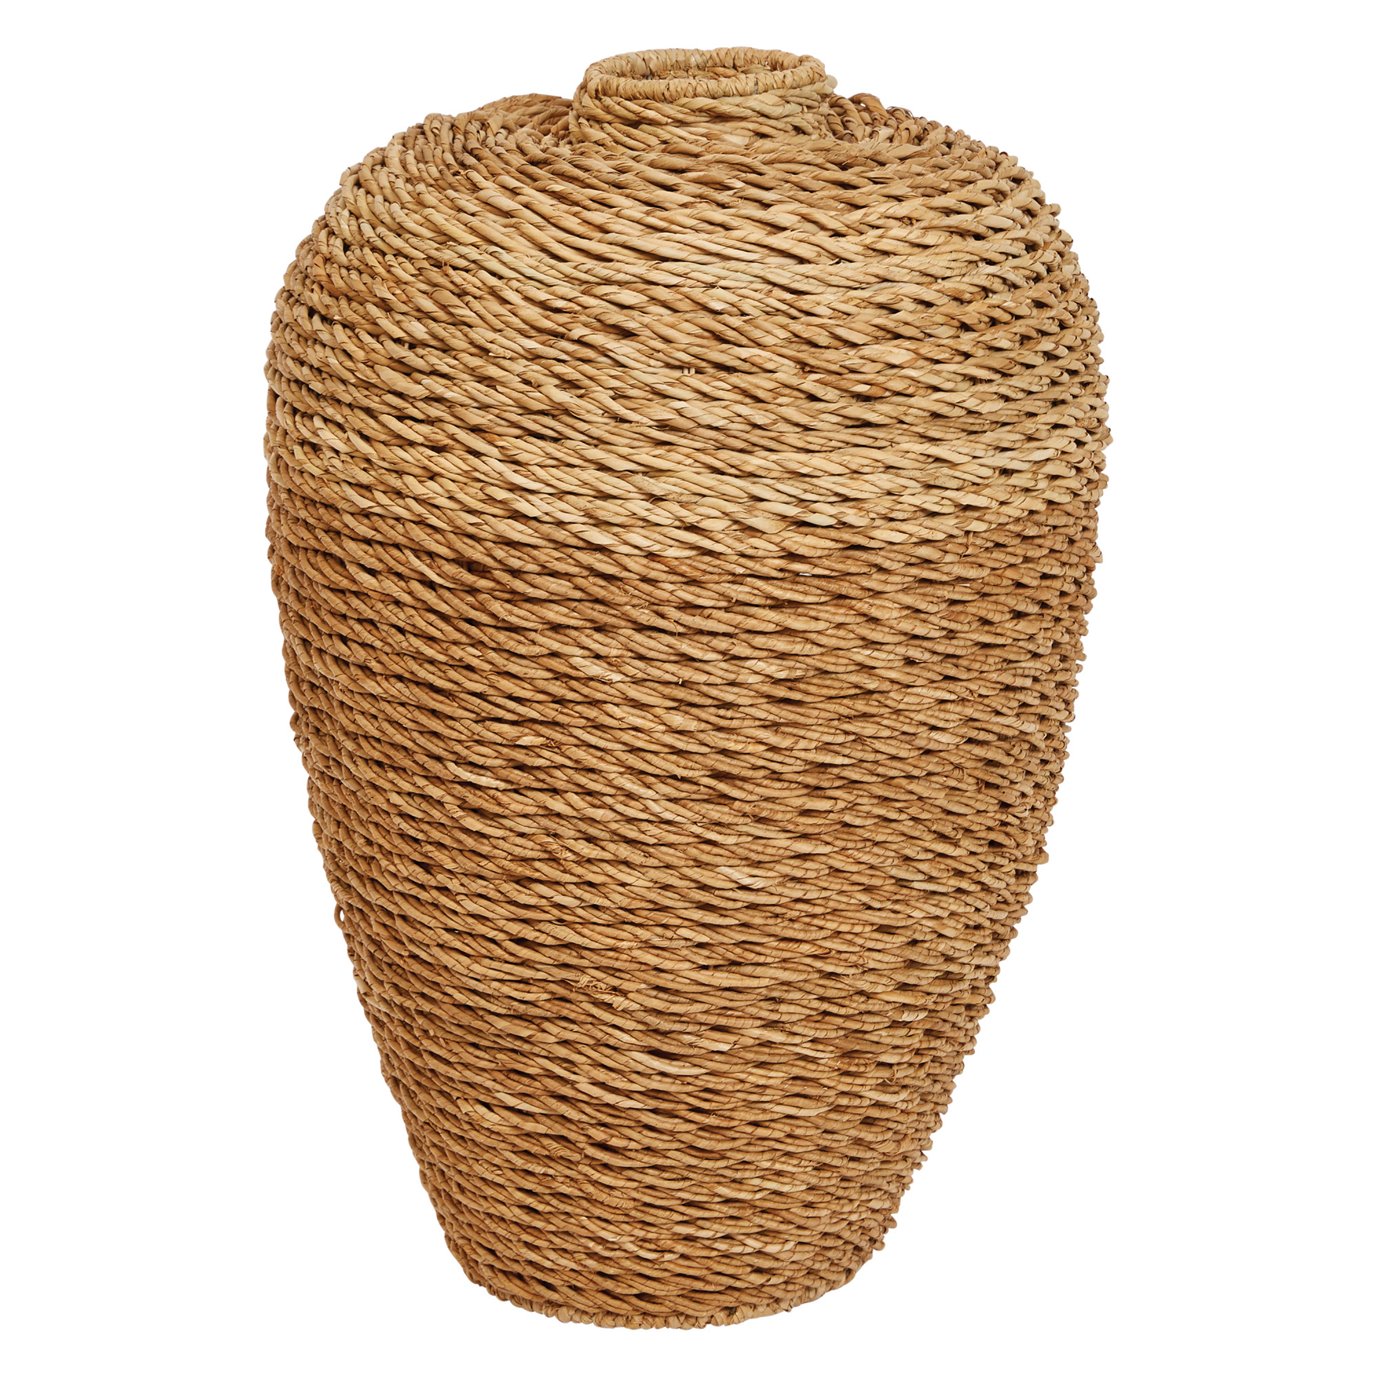 32"H Handwoven Seagrass Floor Vase